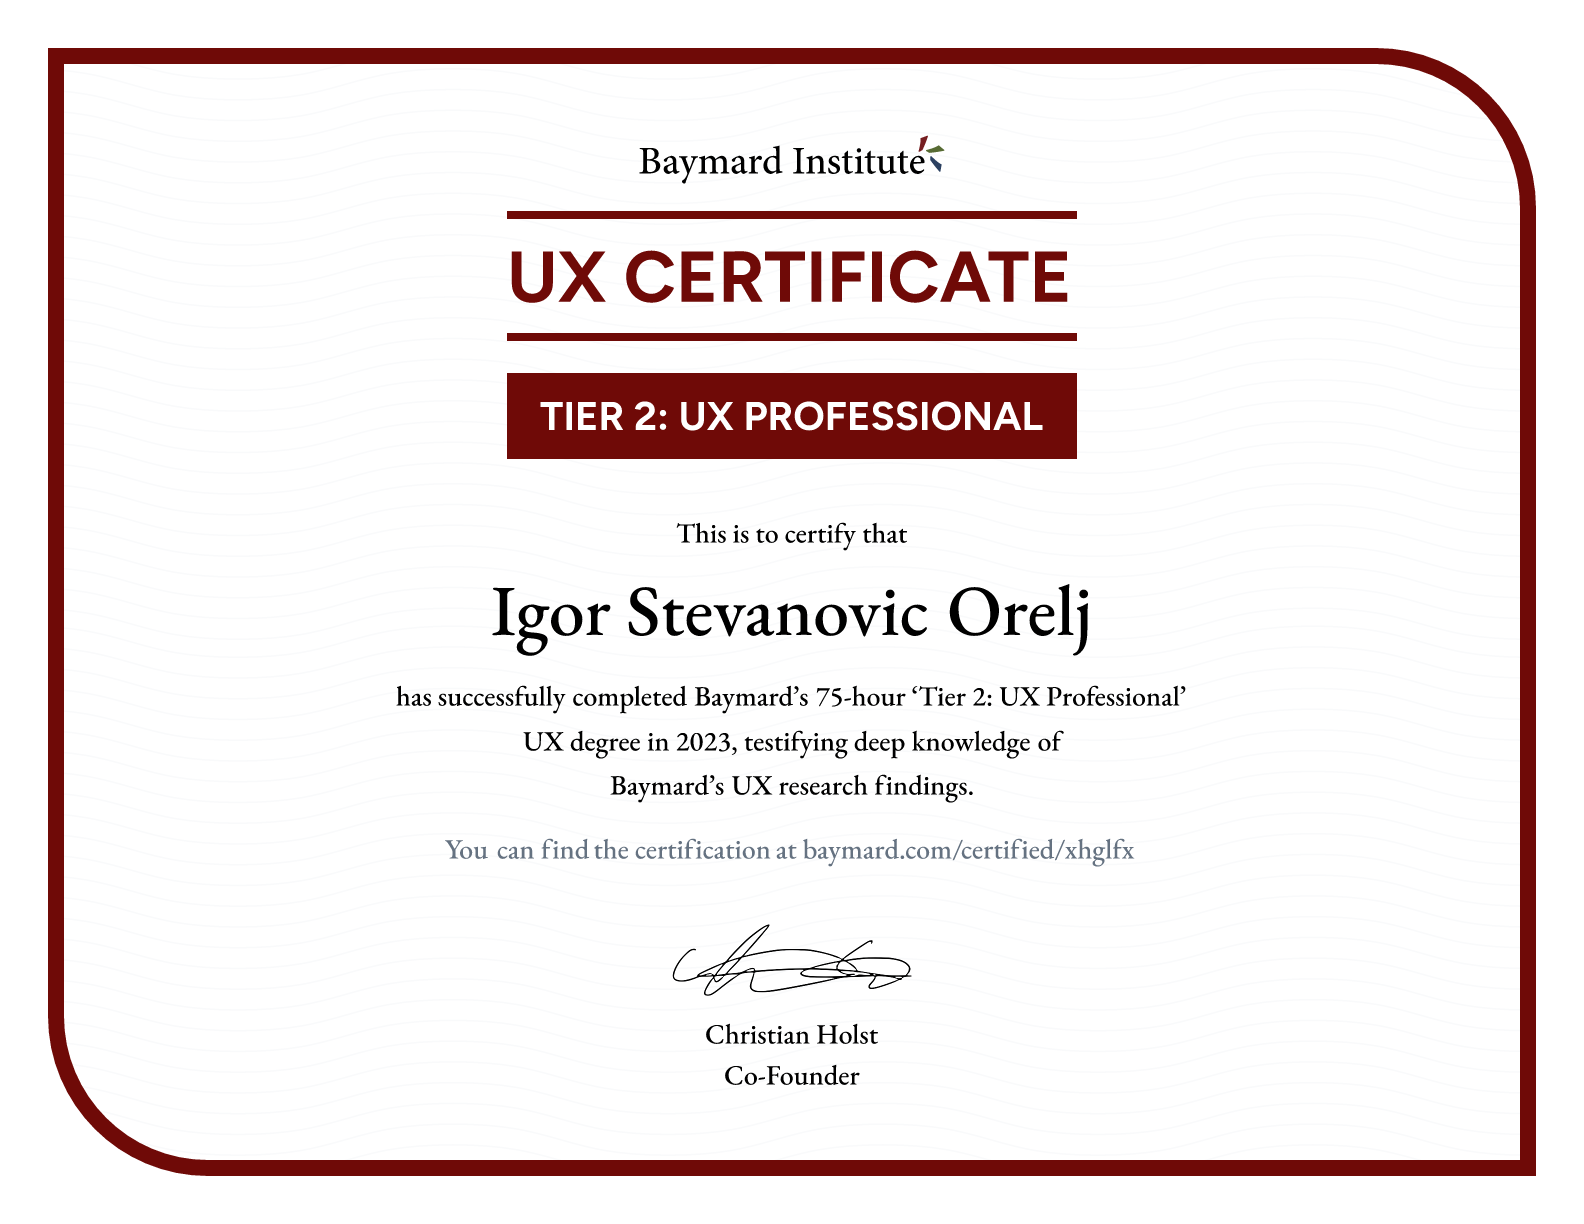 Igor Stevanovic Orelj’s certificate